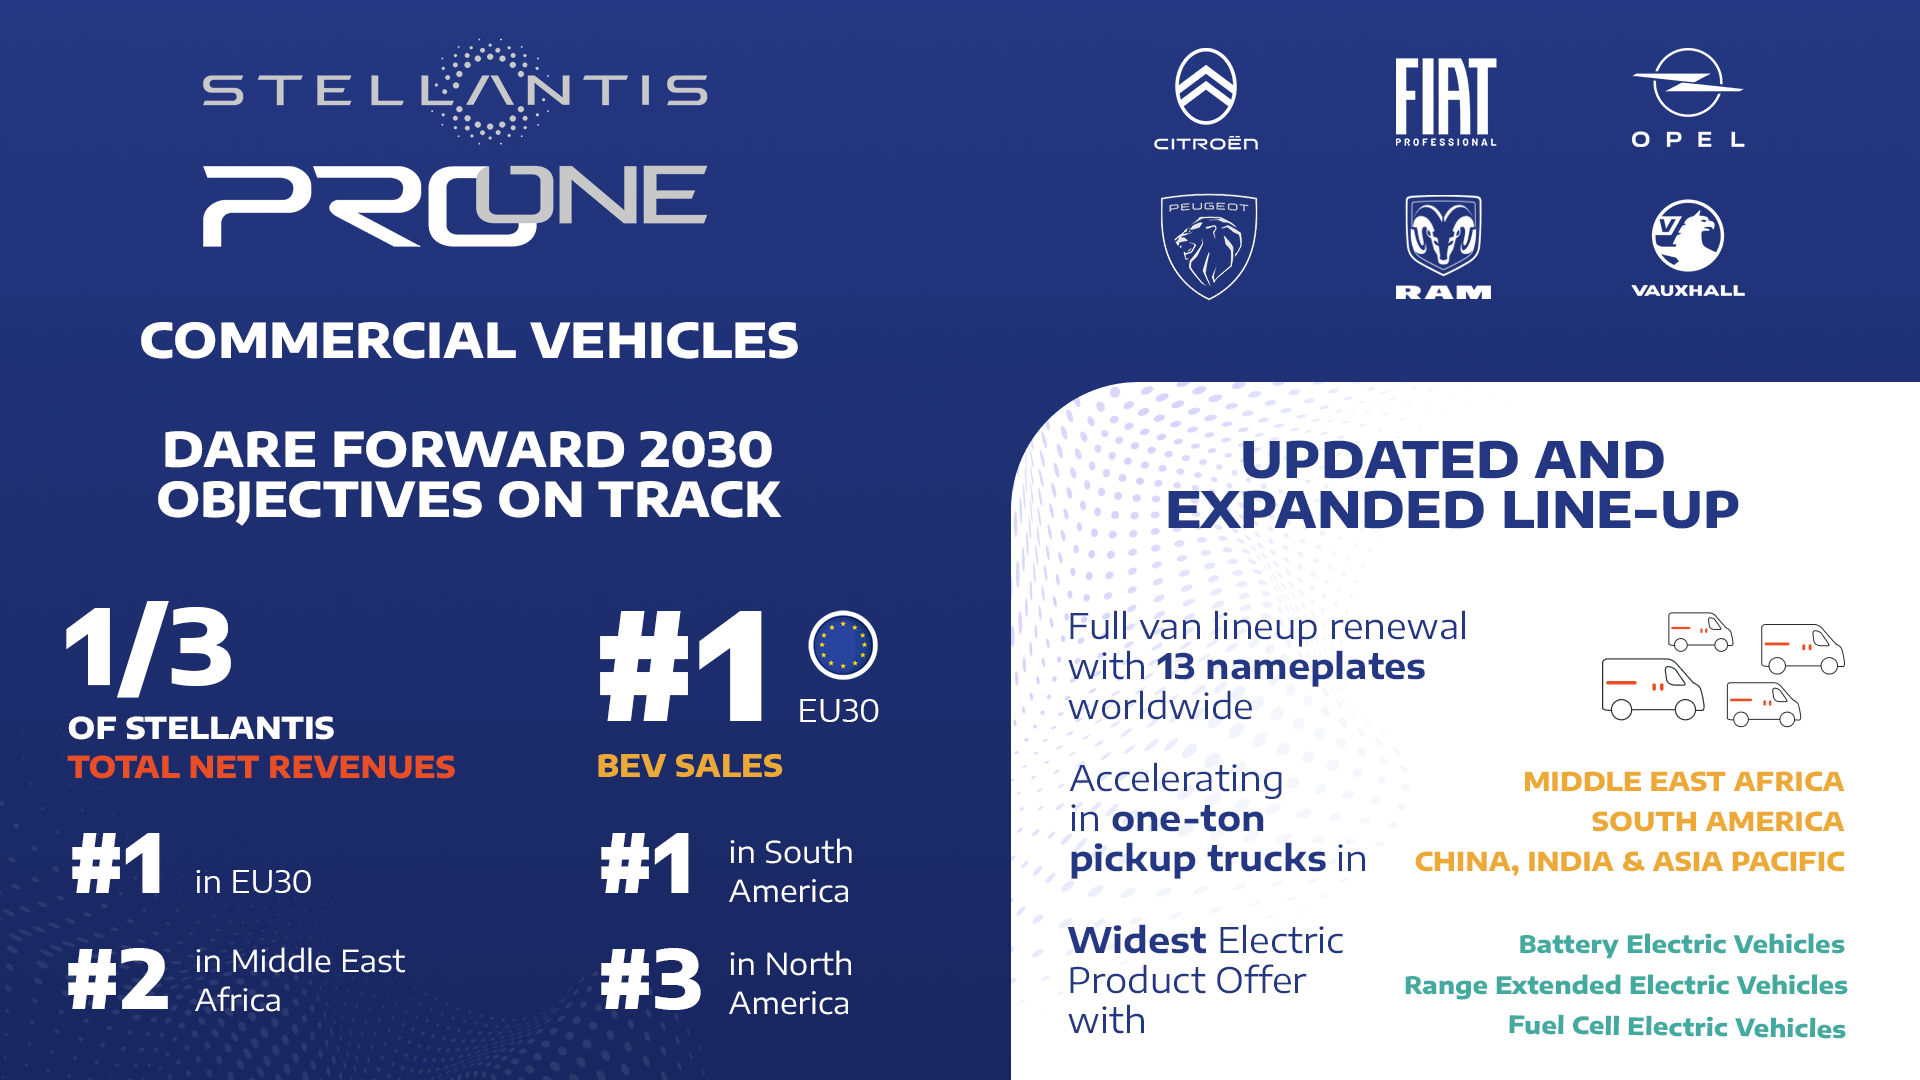 Stellantis Pro One küresel ticari araç liderliğine doğru ilerliyor